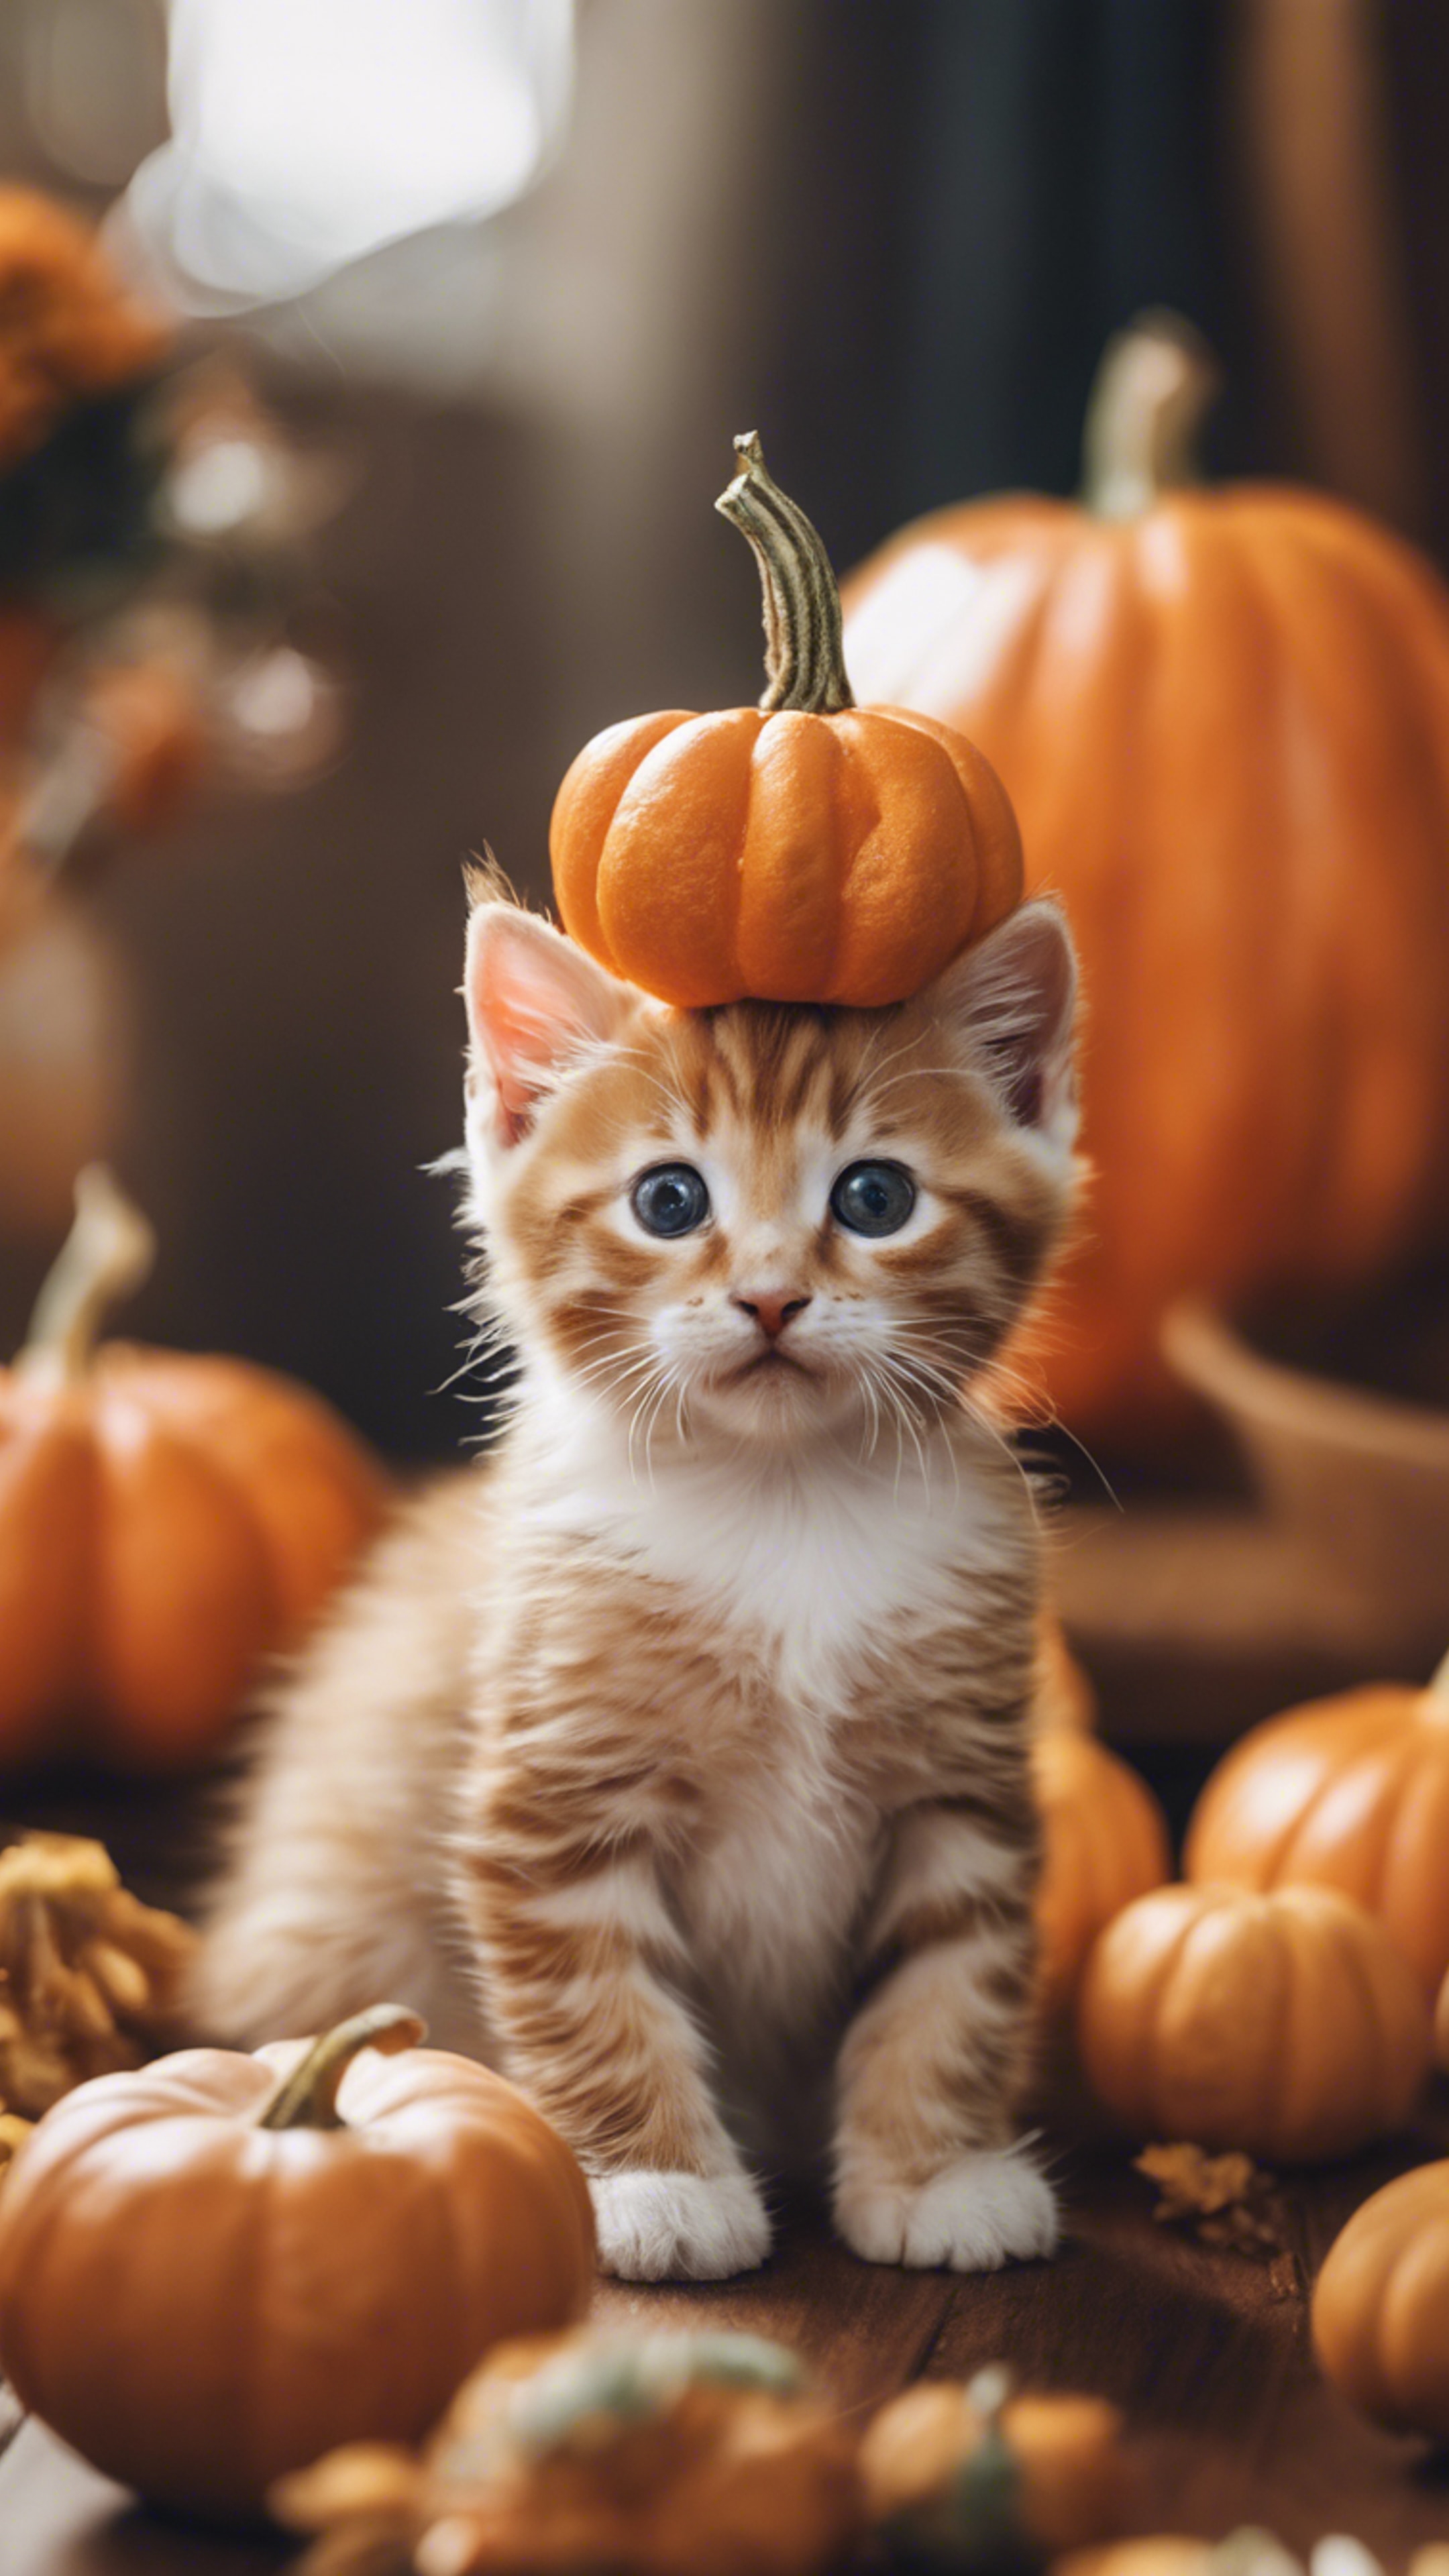 An orange tabby kitten dressed up as a tiny pumpkin for Halloween festivities. ورق الجدران[a5205dadd28d41bcbdef]